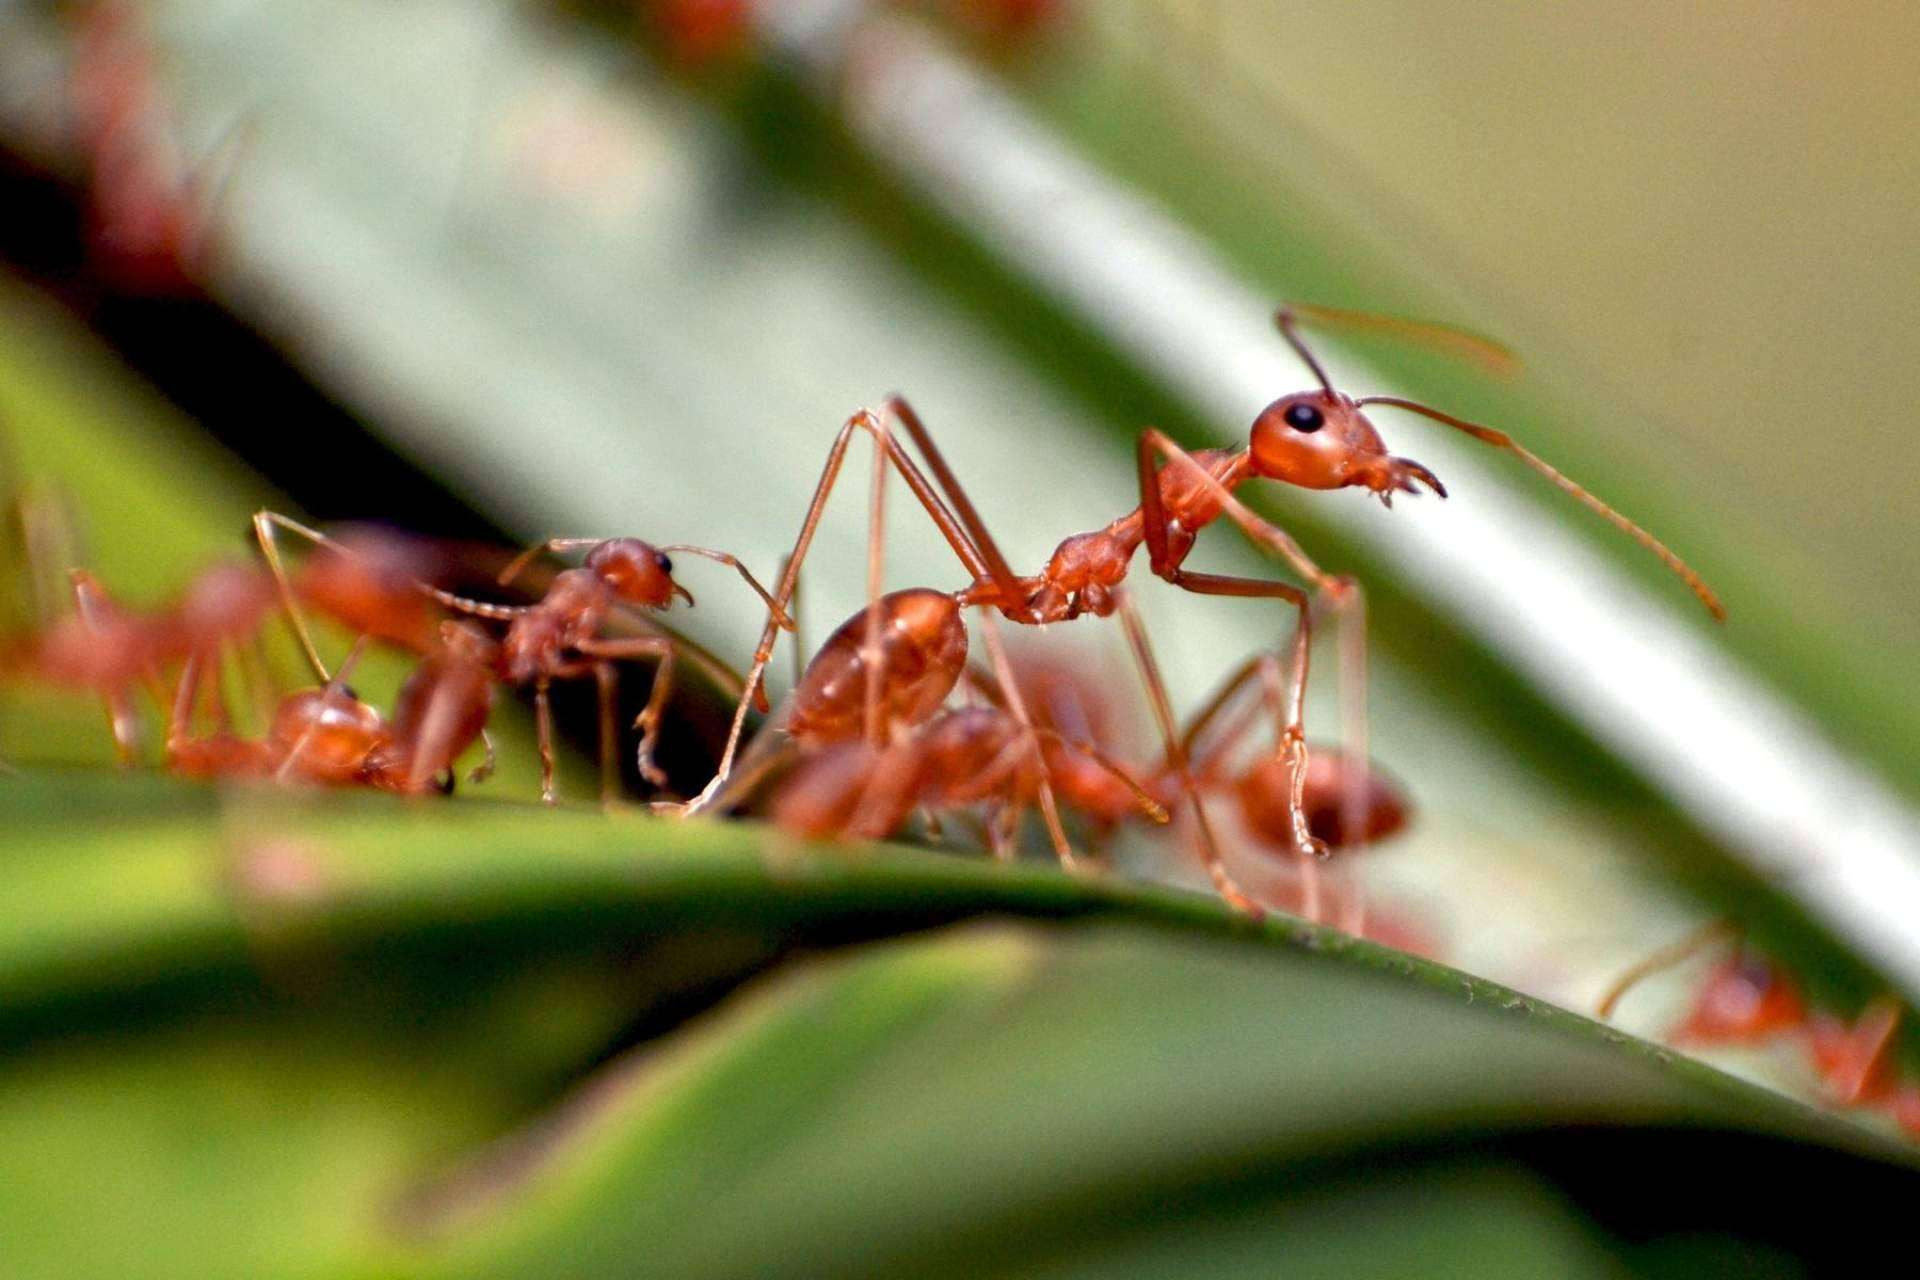  Soluciones reales para prevenir la invasión de hormigas en el hogar 